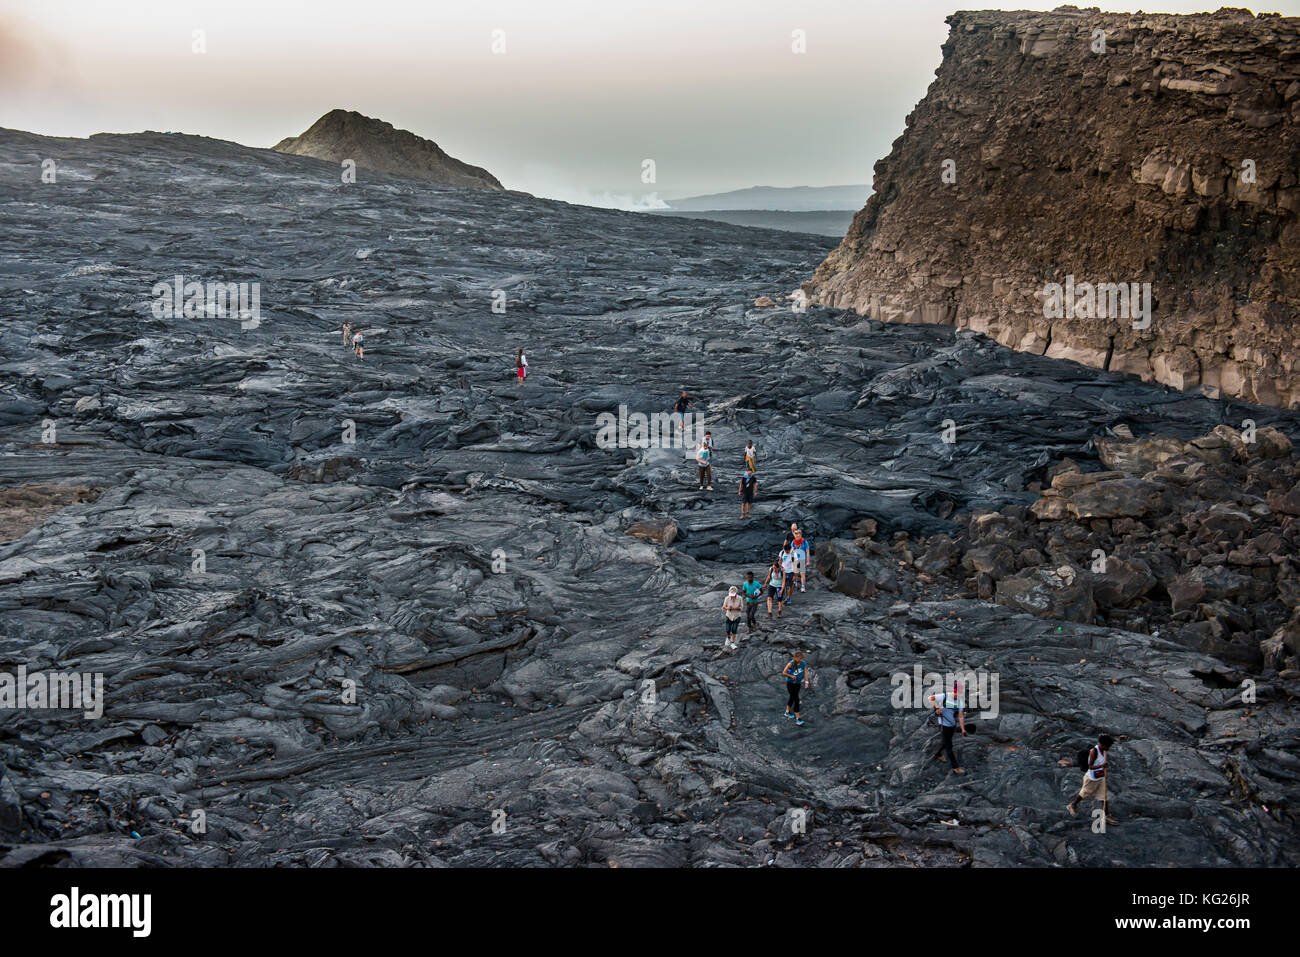 Touristen zu Fuß durch Lava Feld um die sehr aktive Erta Ale Vulkan, danakil Depression, Äthiopien, Afrika Stockfoto